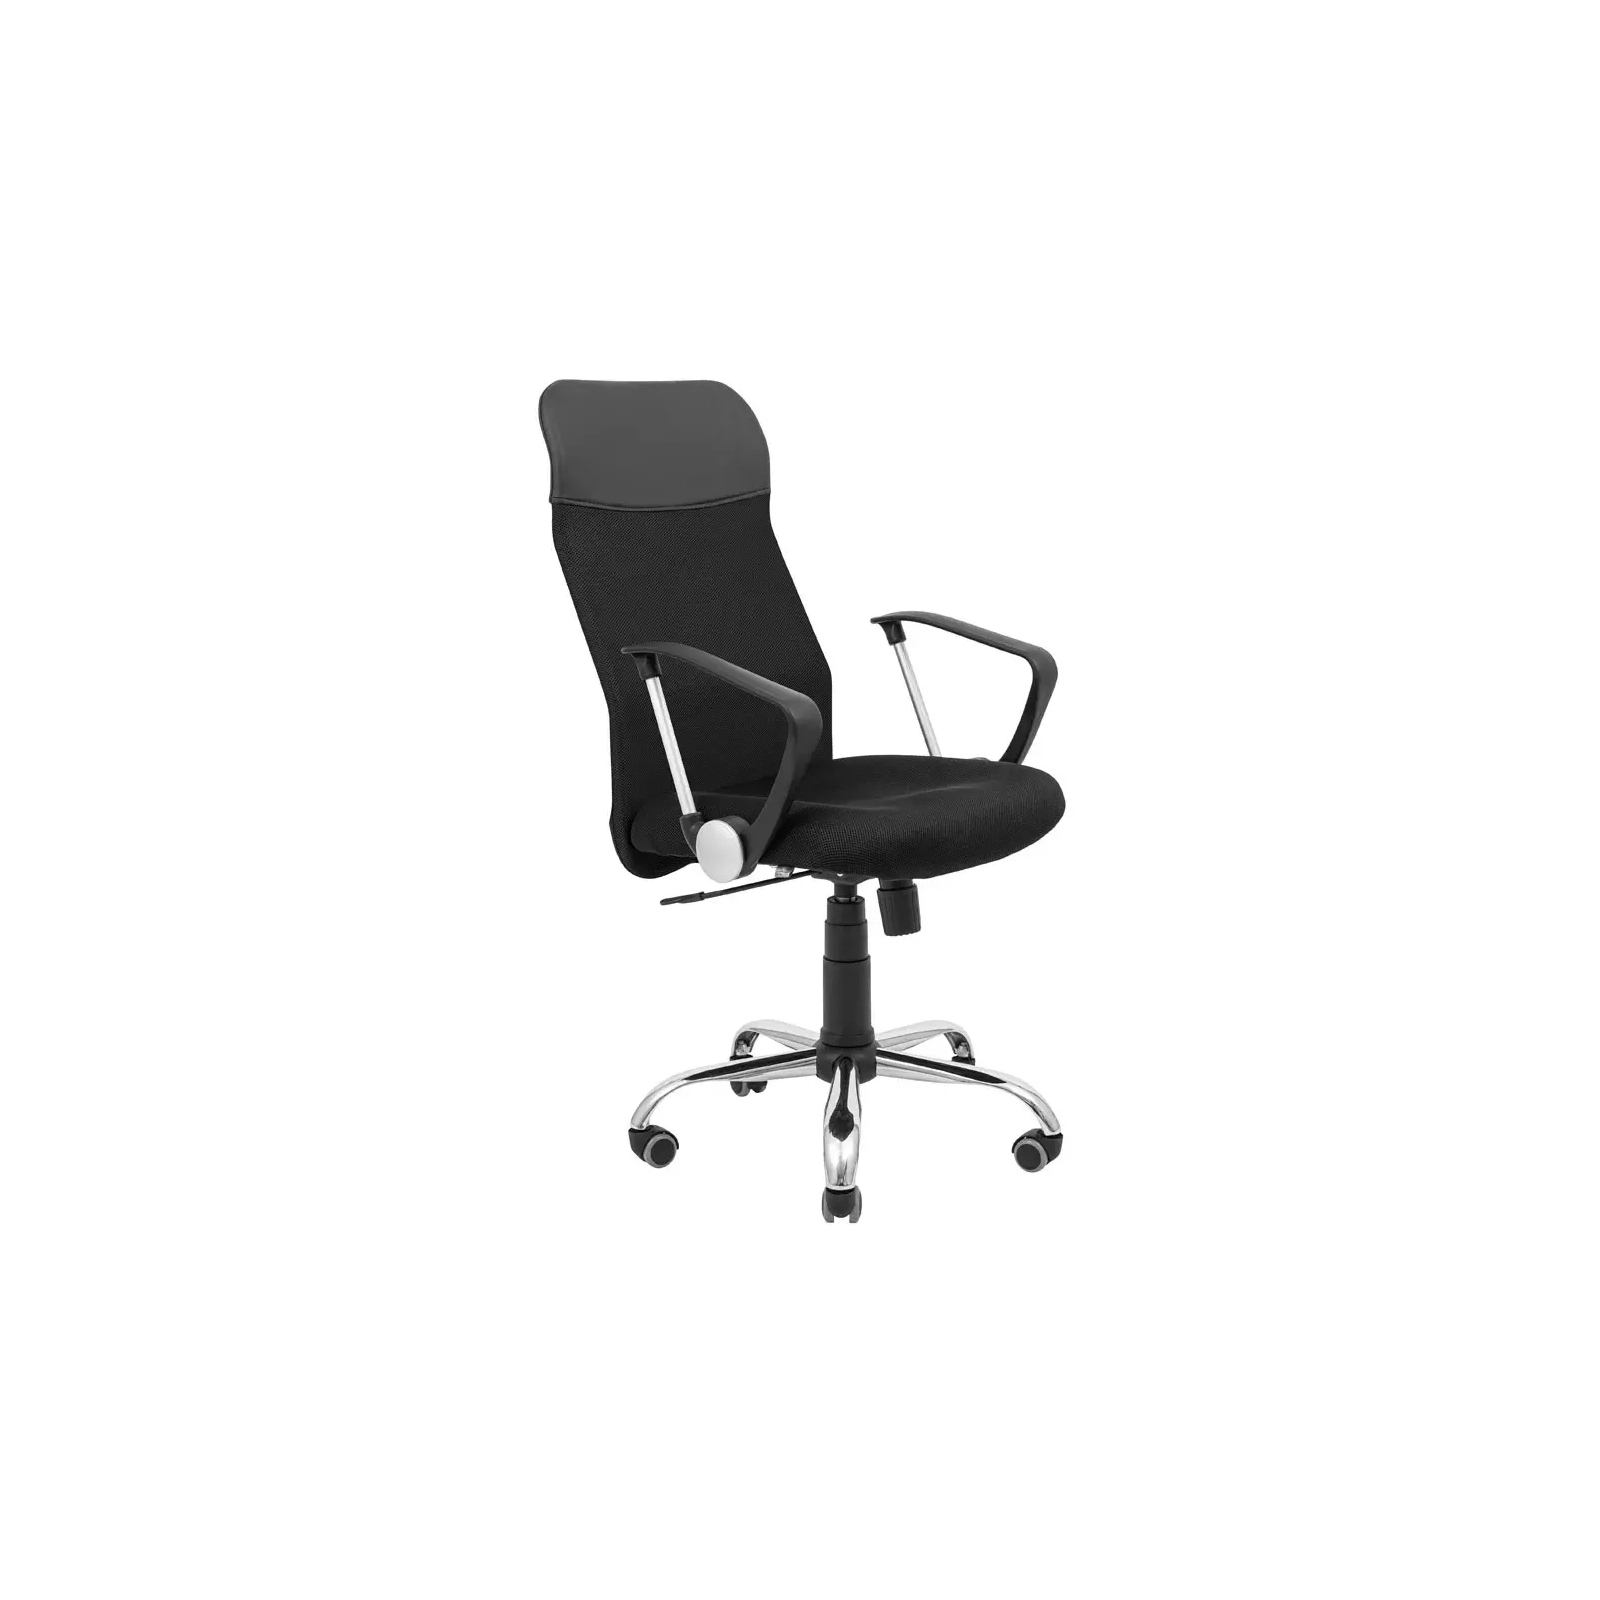 Офисное кресло Richman Ультра Ю Хром M-1 (Tilt) Сетка черная (ADD0003100)